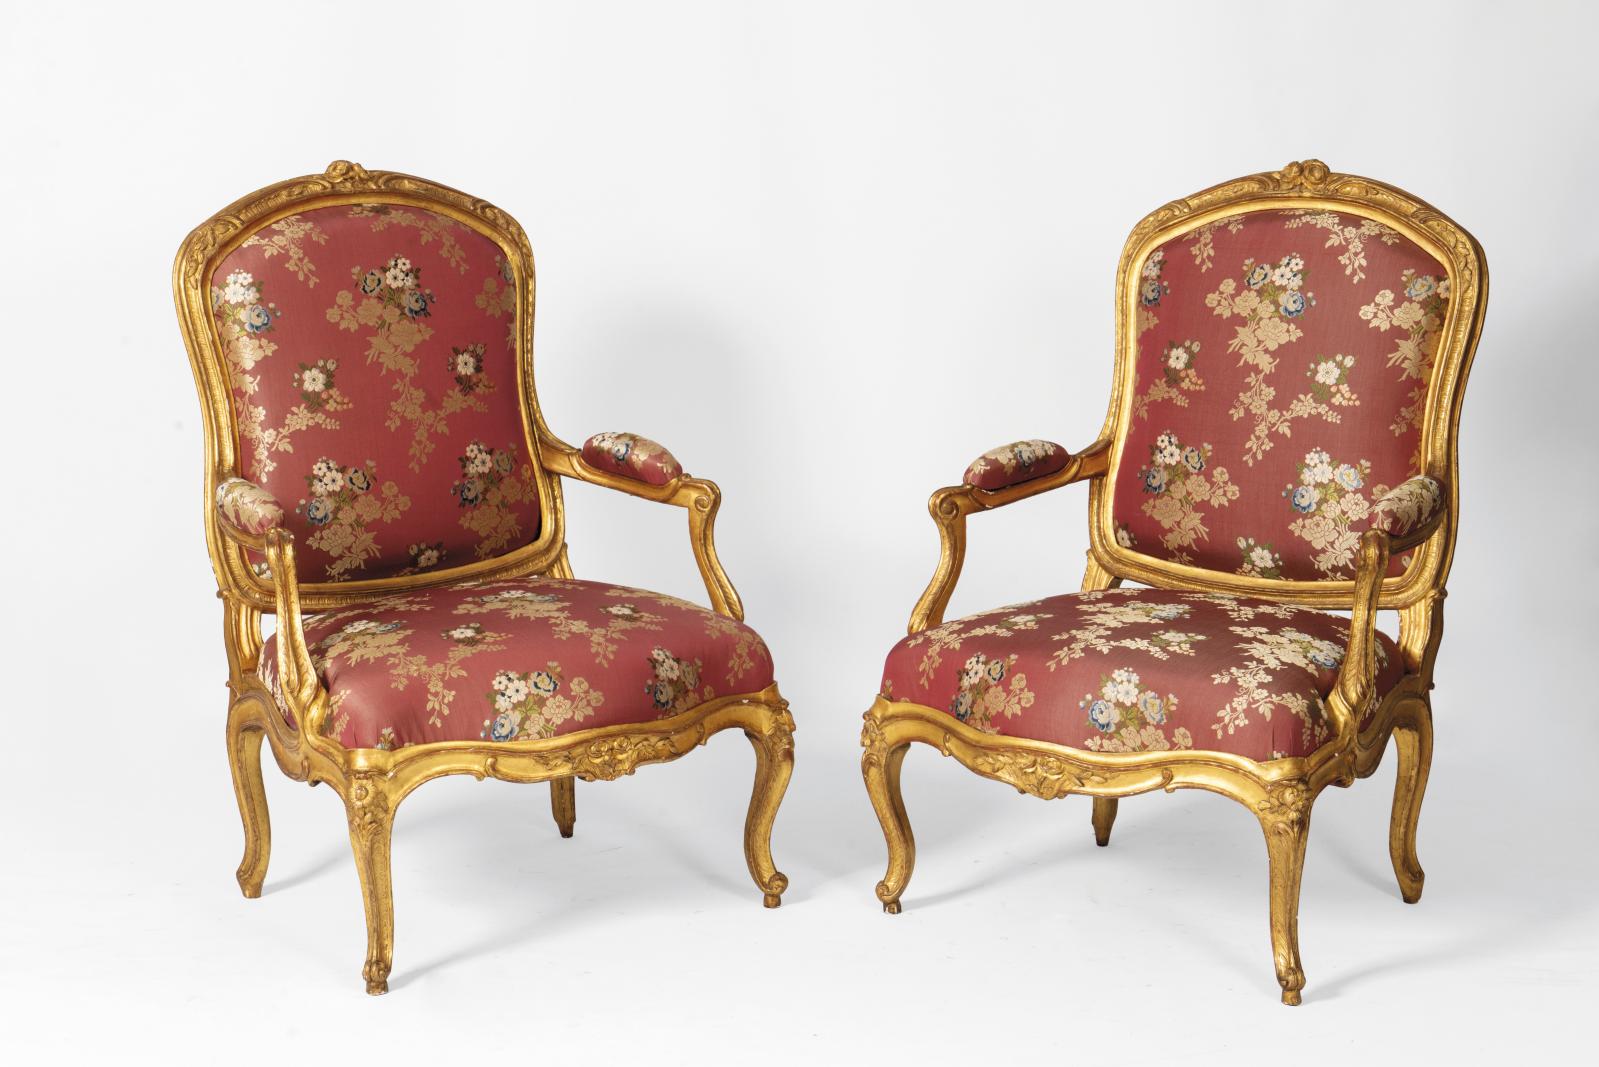 La majesté des sièges Louis XV